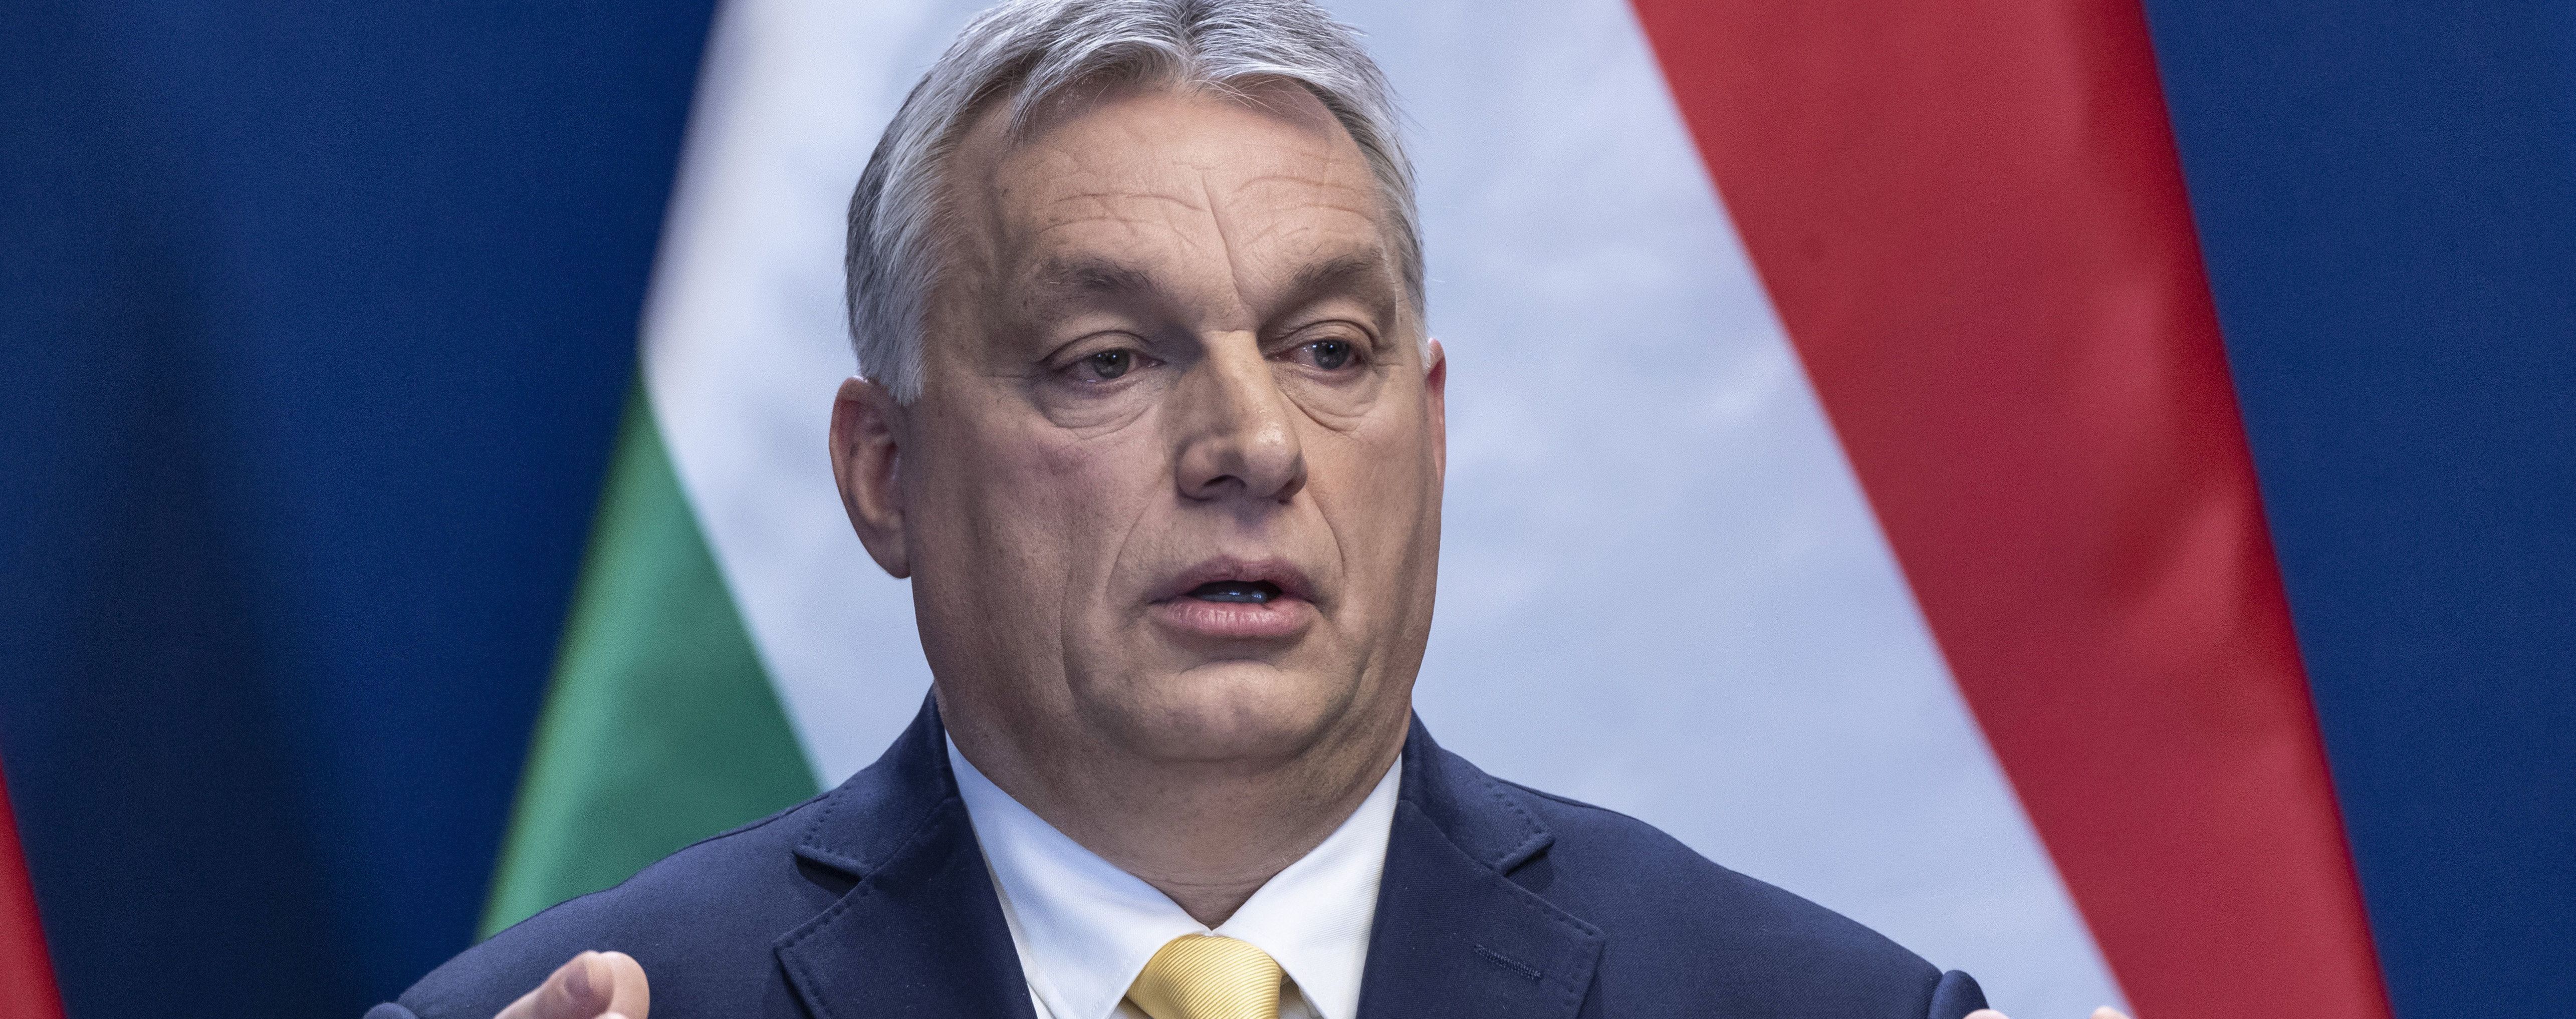 Премьер Венгрии хочет встретиться с Зеленским, но настаивает, что решение за Украиной